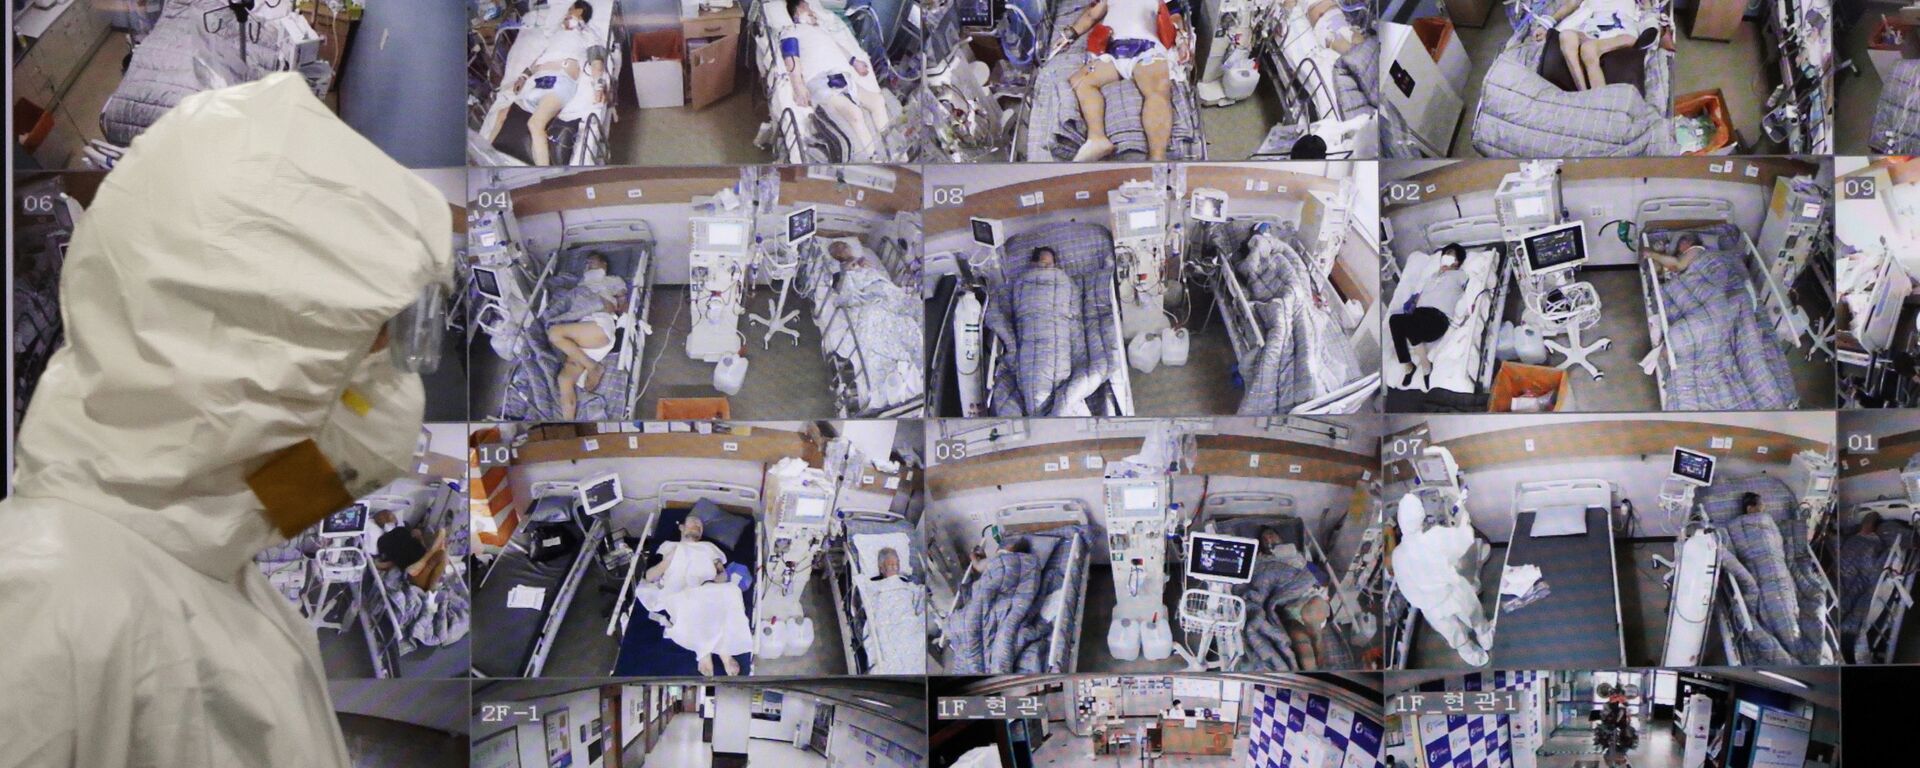 Медицинский работник проходит мимо монитора с видео из палат пациентов в больнице Пхёнтхэке, Южная Корея - Sputnik 日本, 1920, 17.12.2021